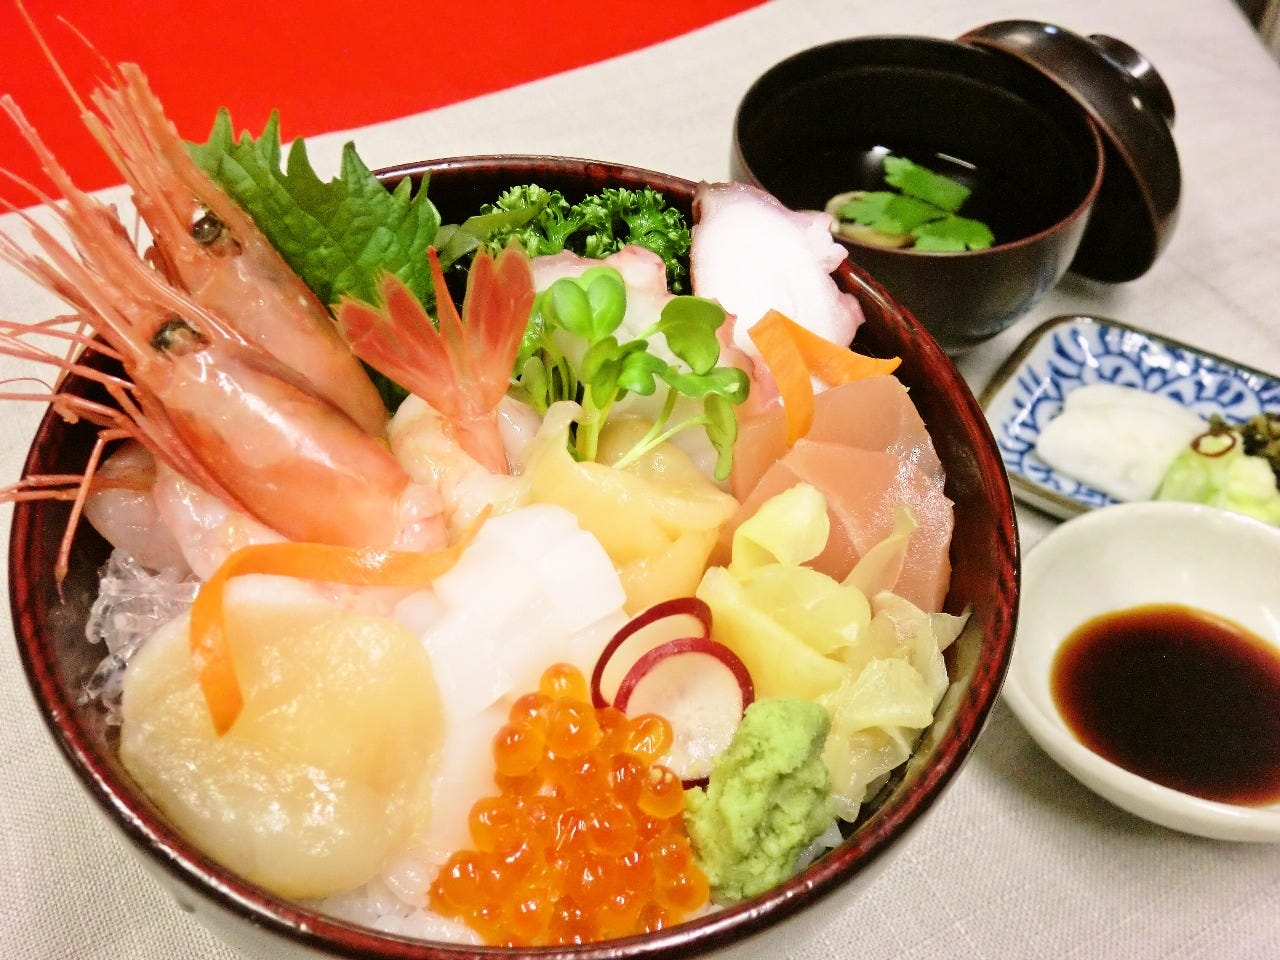 黒い丼に四季のテーブルの「日本海丼」が盛られている